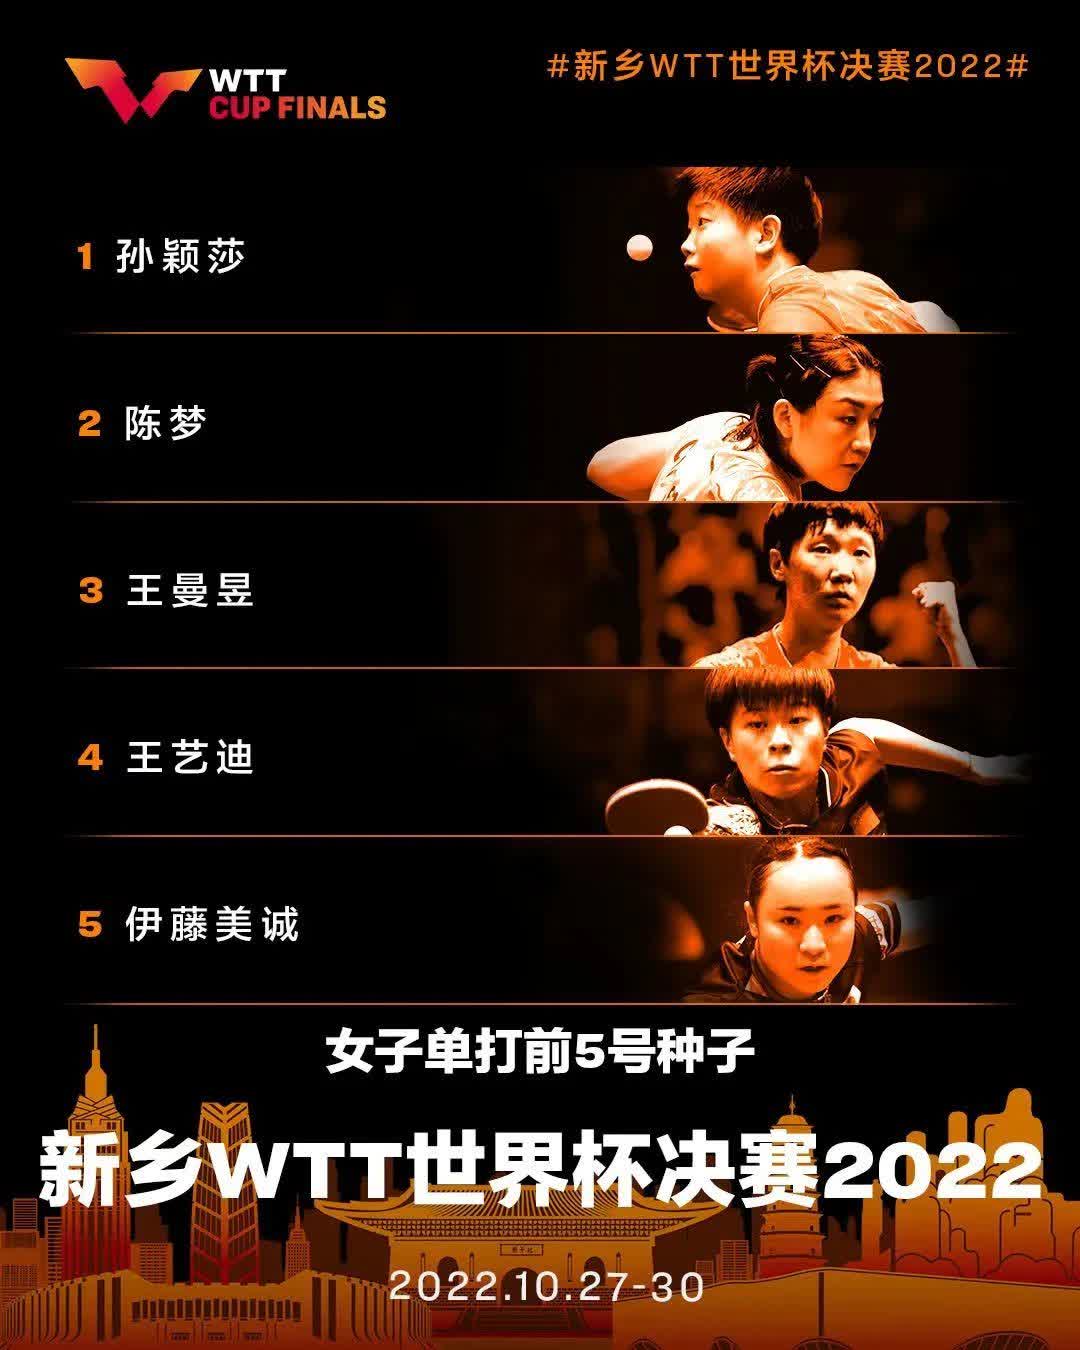 WTT天下盃決賽確定部份球員參賽資格　樊振東馬龍在列